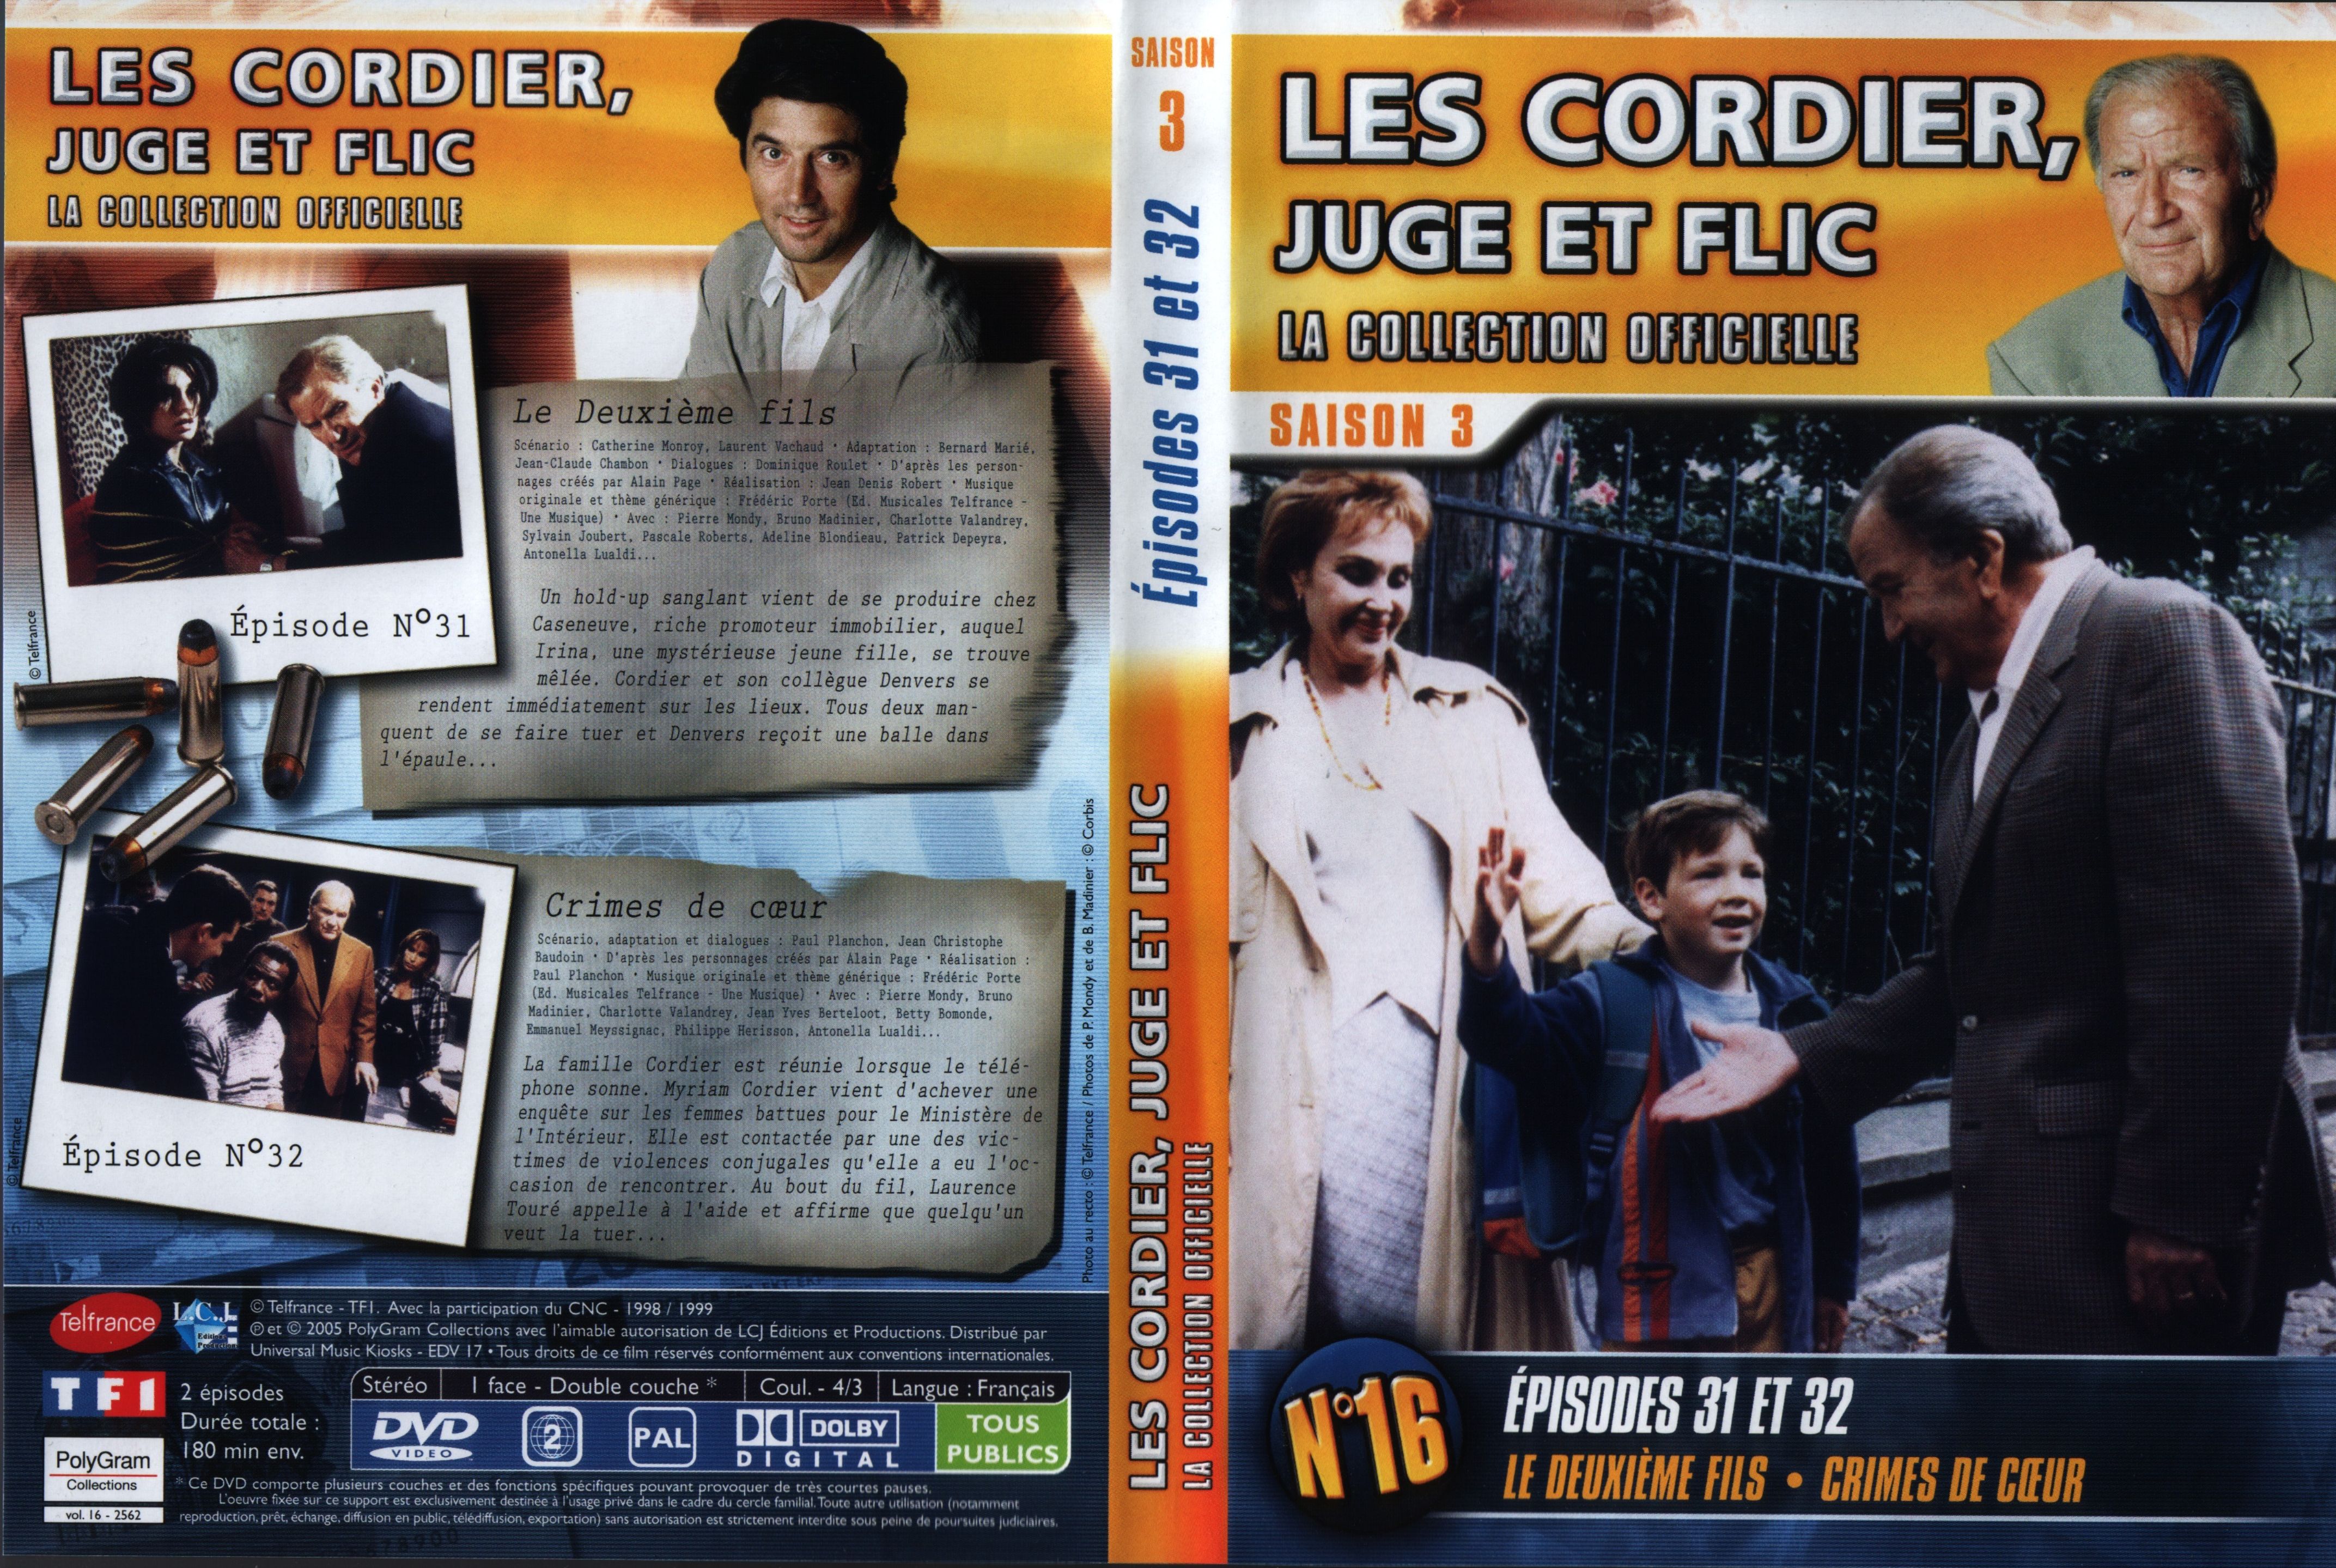 Jaquette DVD Les cordier juge et flic Saison 3 vol 16